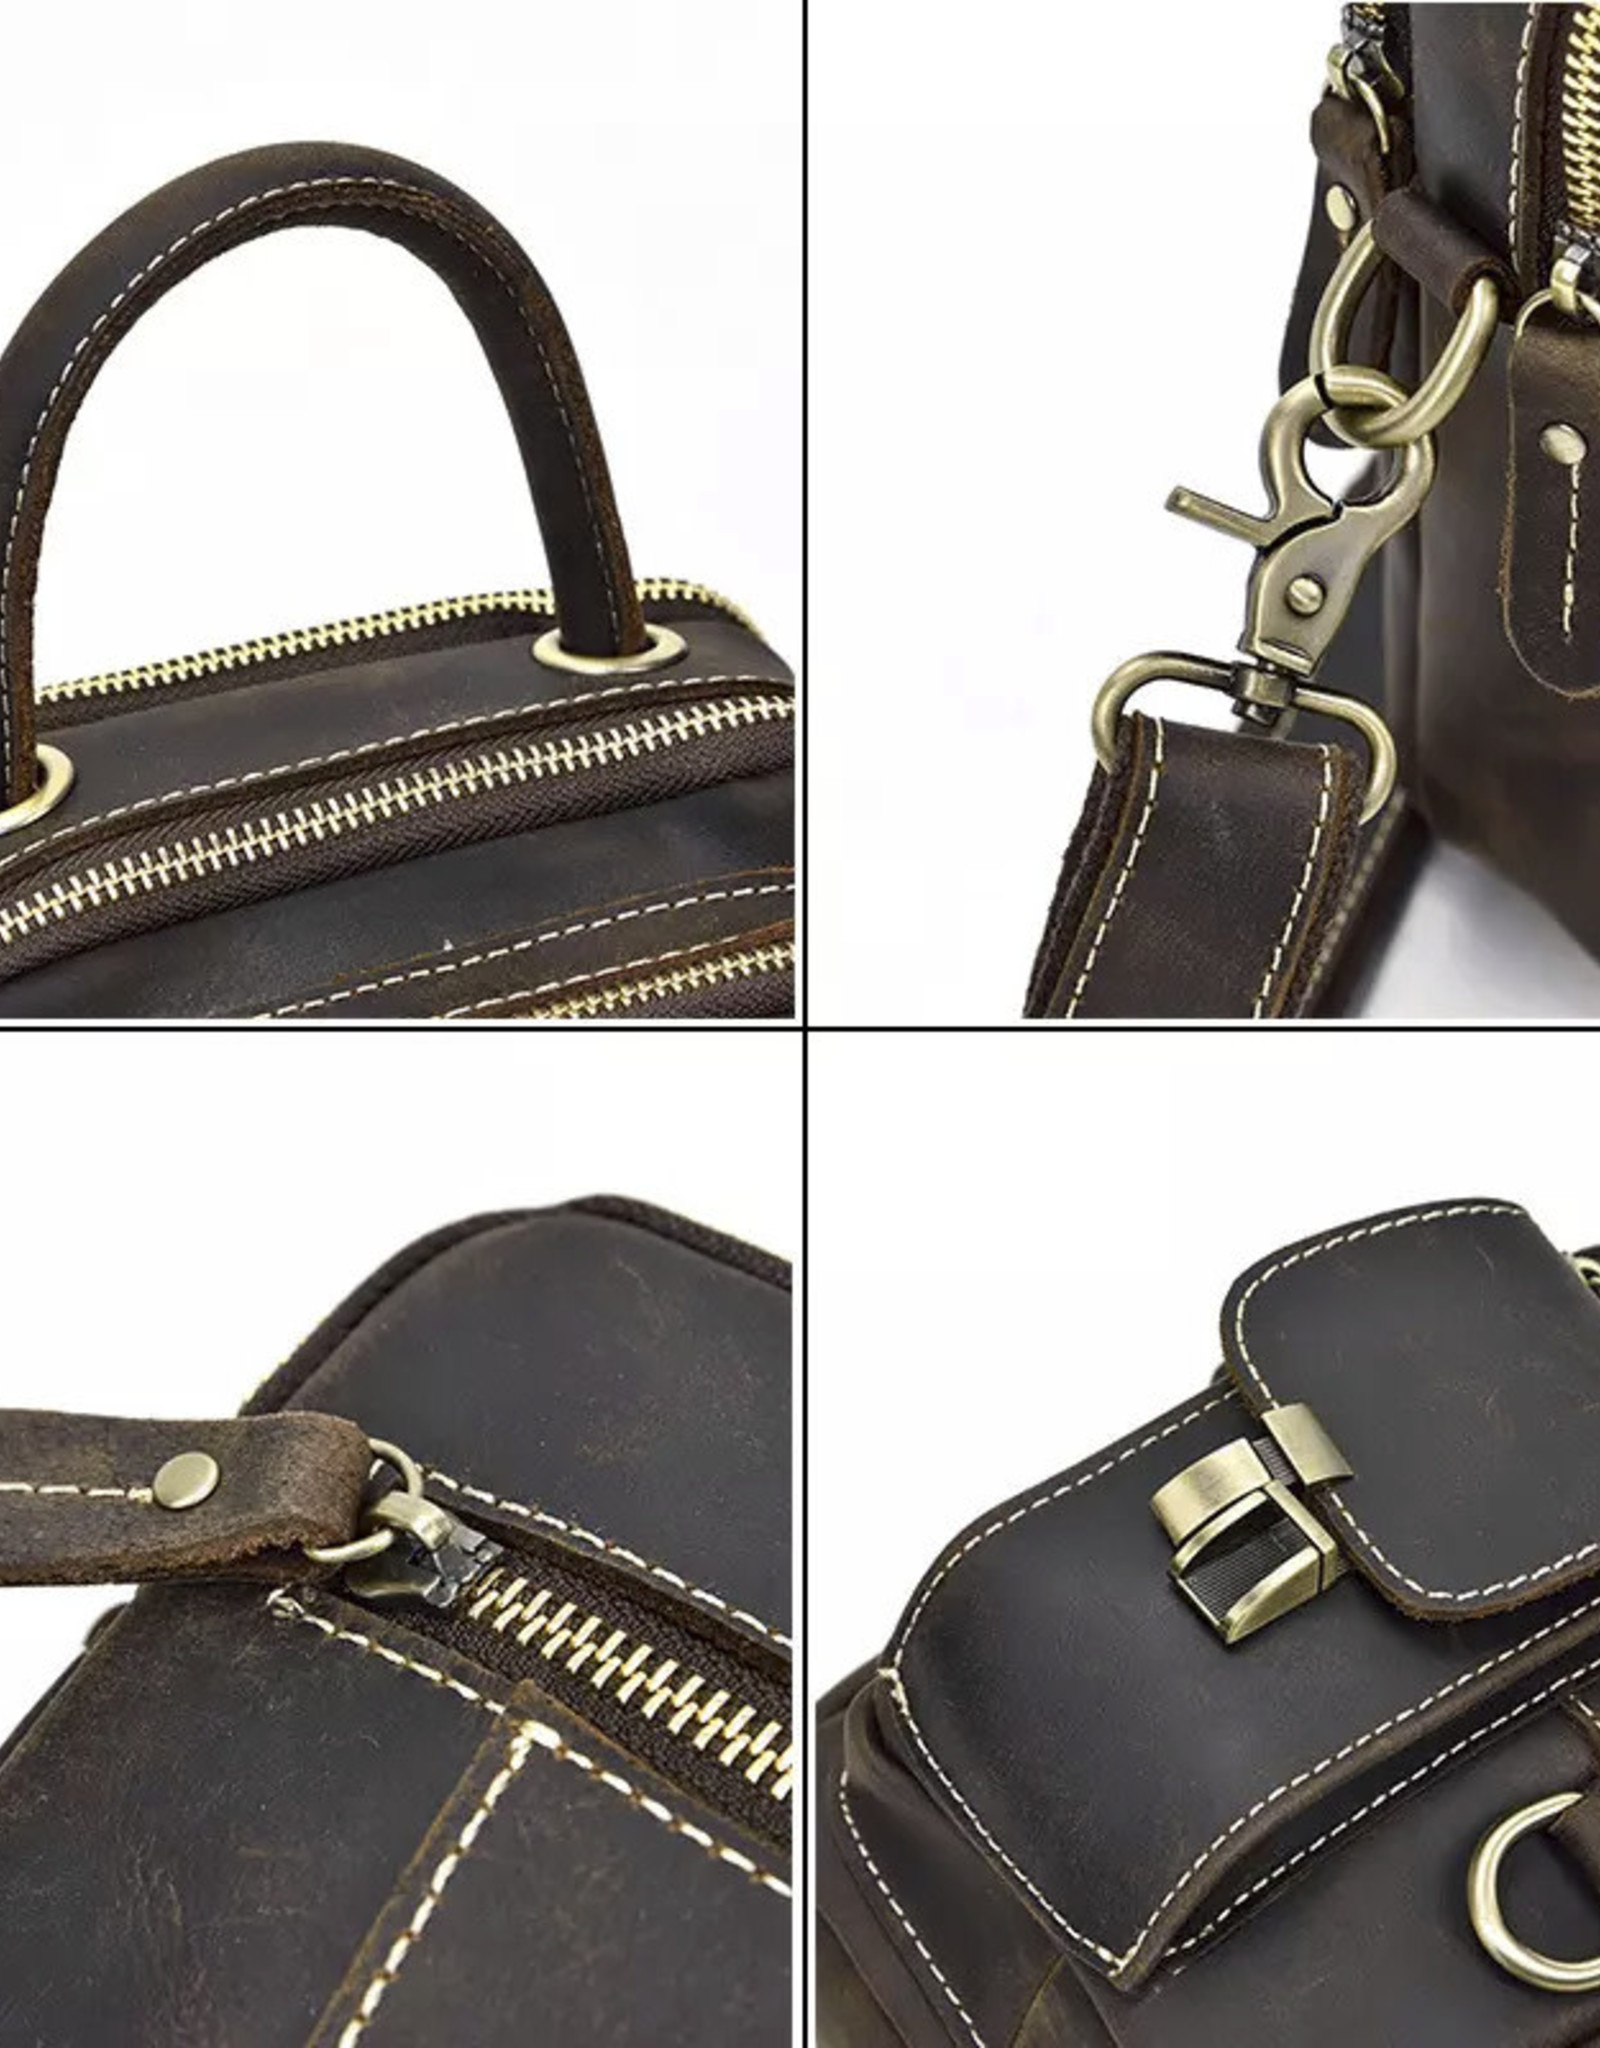 Camden Shoulder Bag Genuine Leather